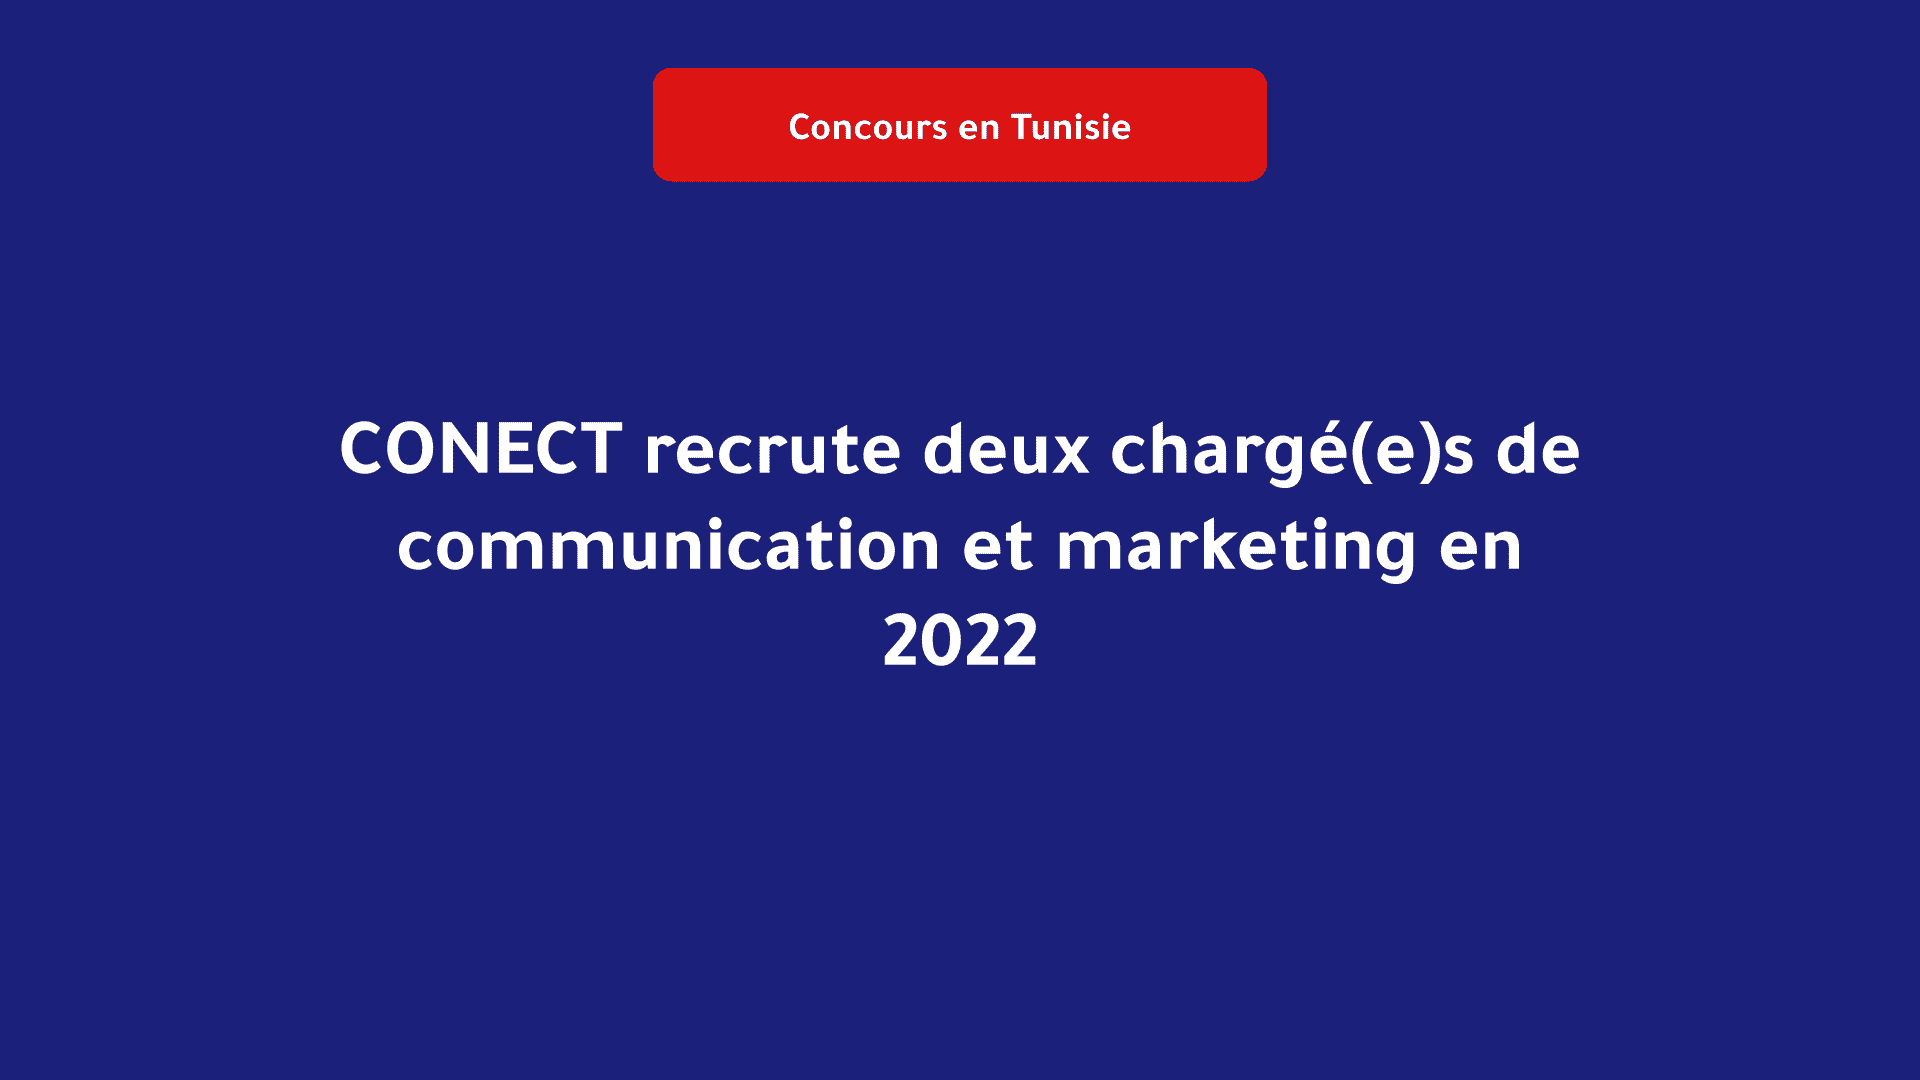 CONECT recrute deux chargé(e)s de communication et marketing